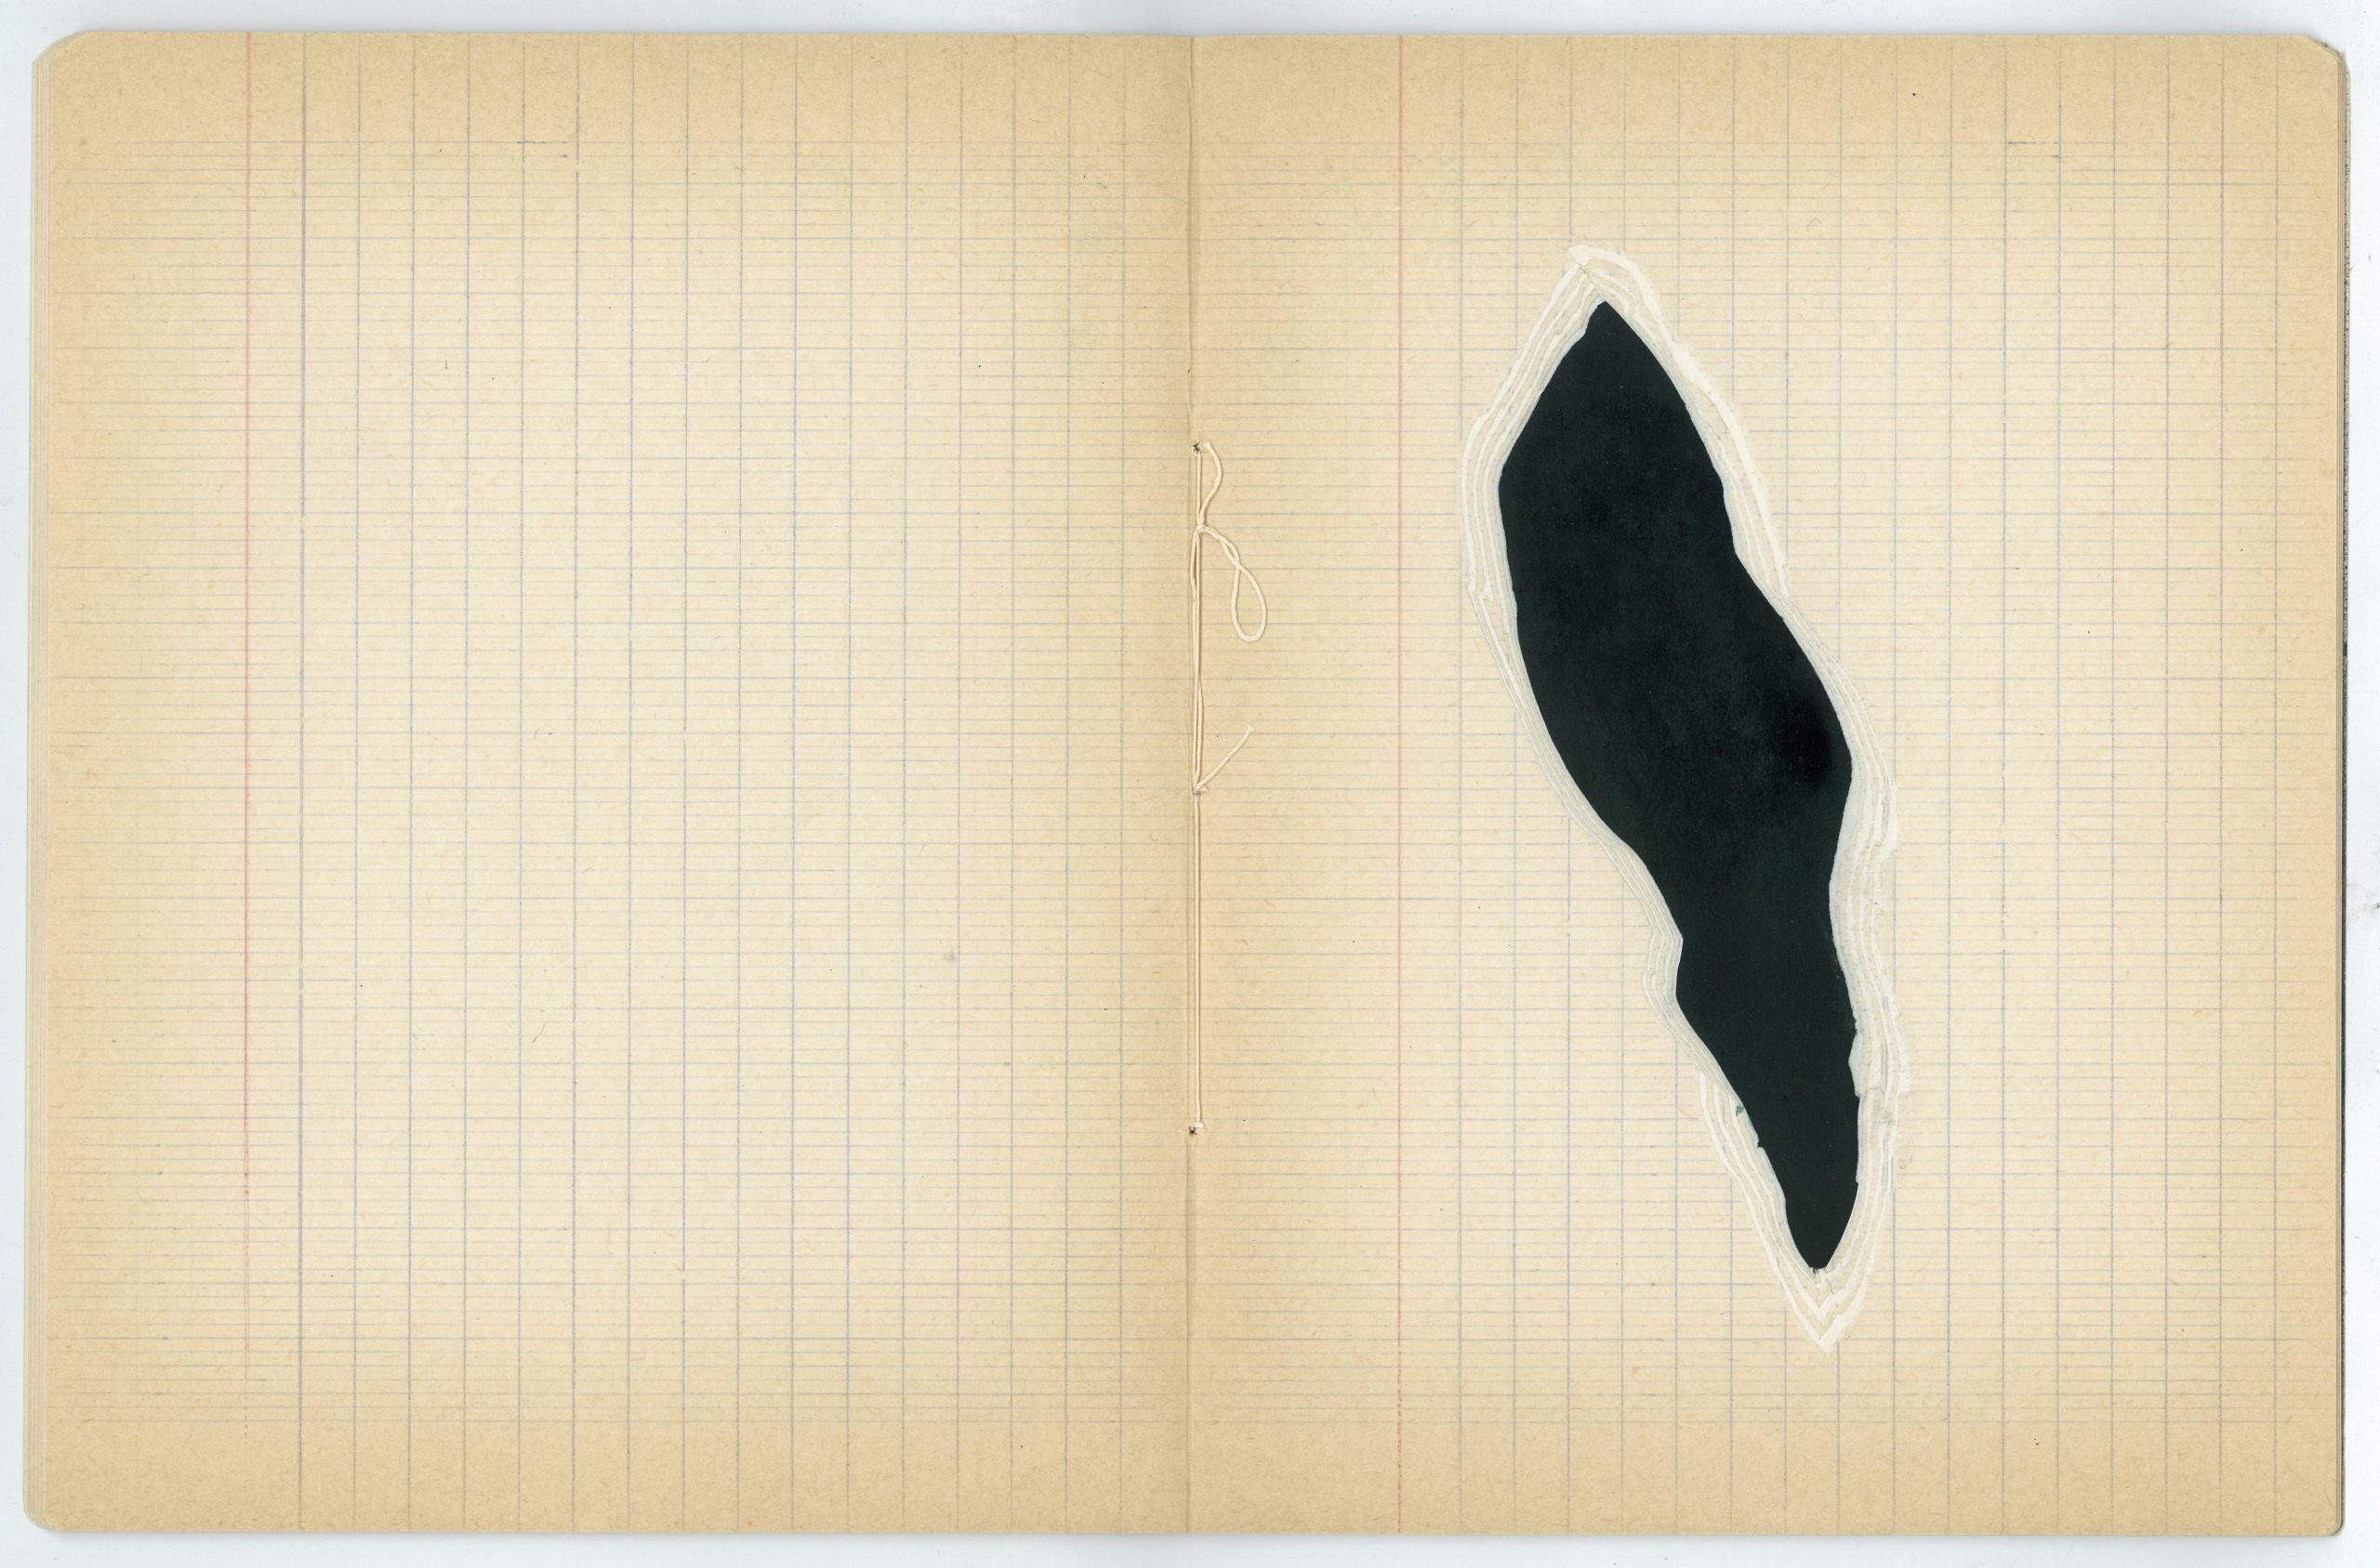 15 – Aïcha Snoussi – Anticodexxx – Encre sur cahier d_écolier – 17 x 22 cm – 2017